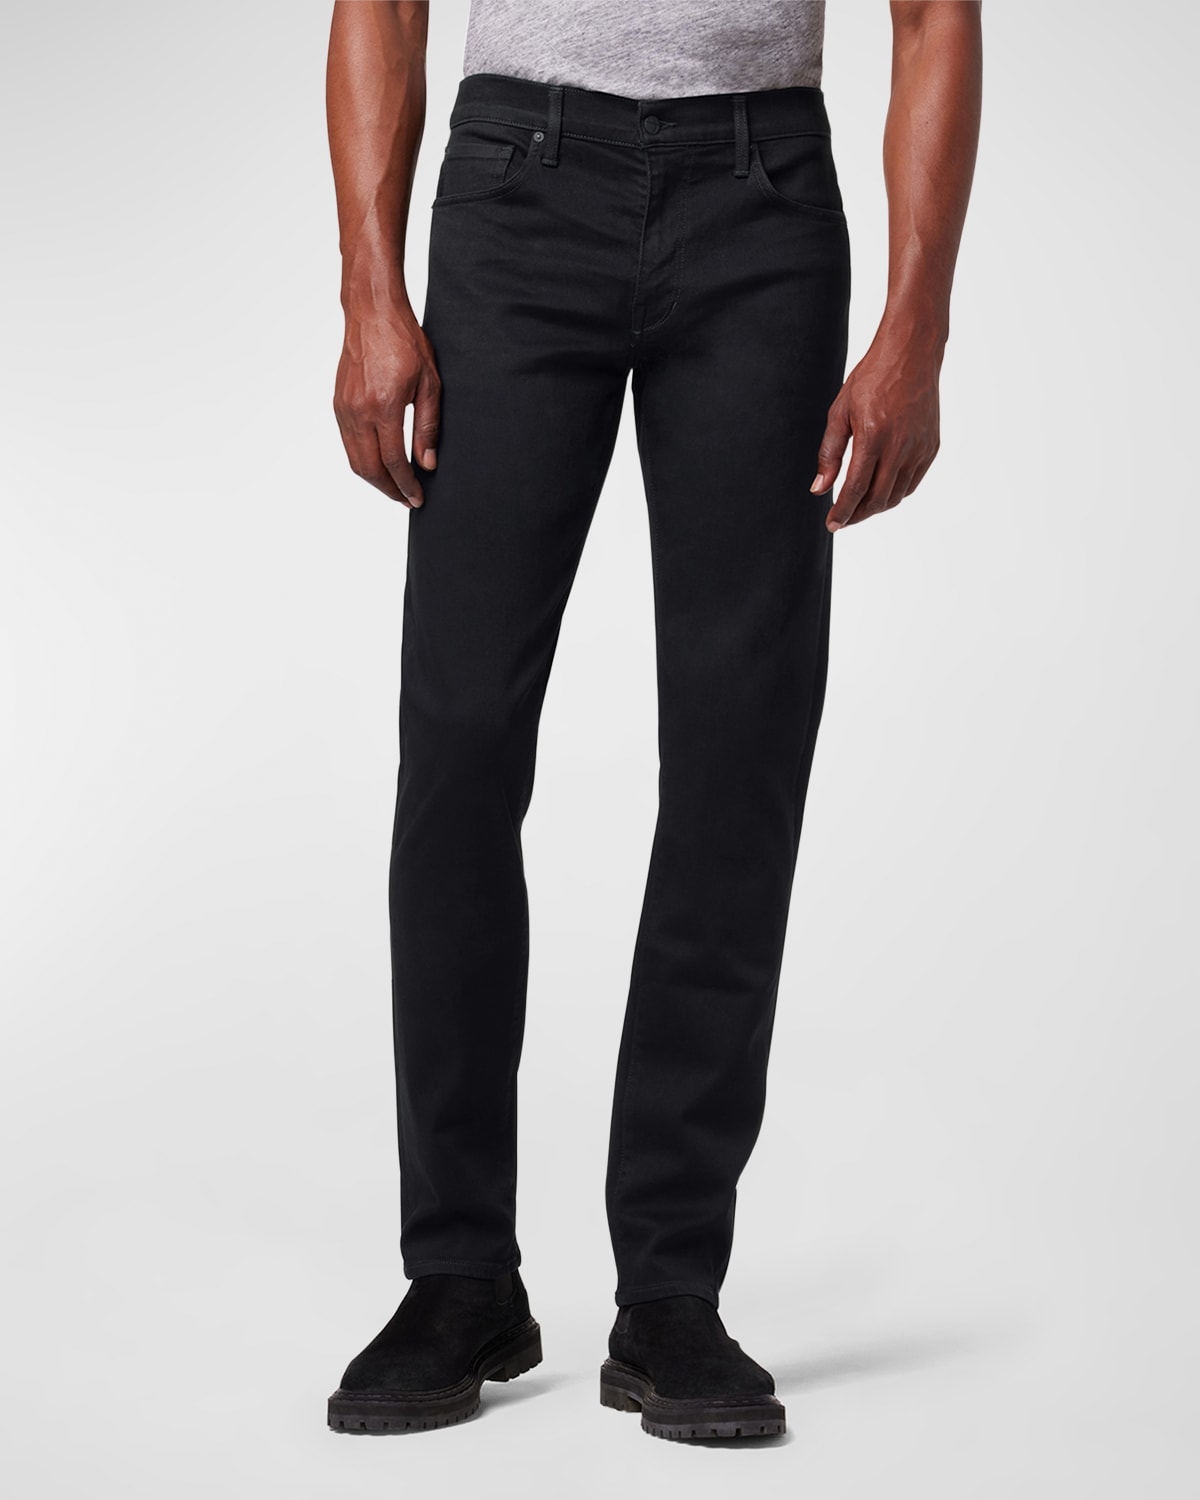 Men's Brixton Black Denim Jeans